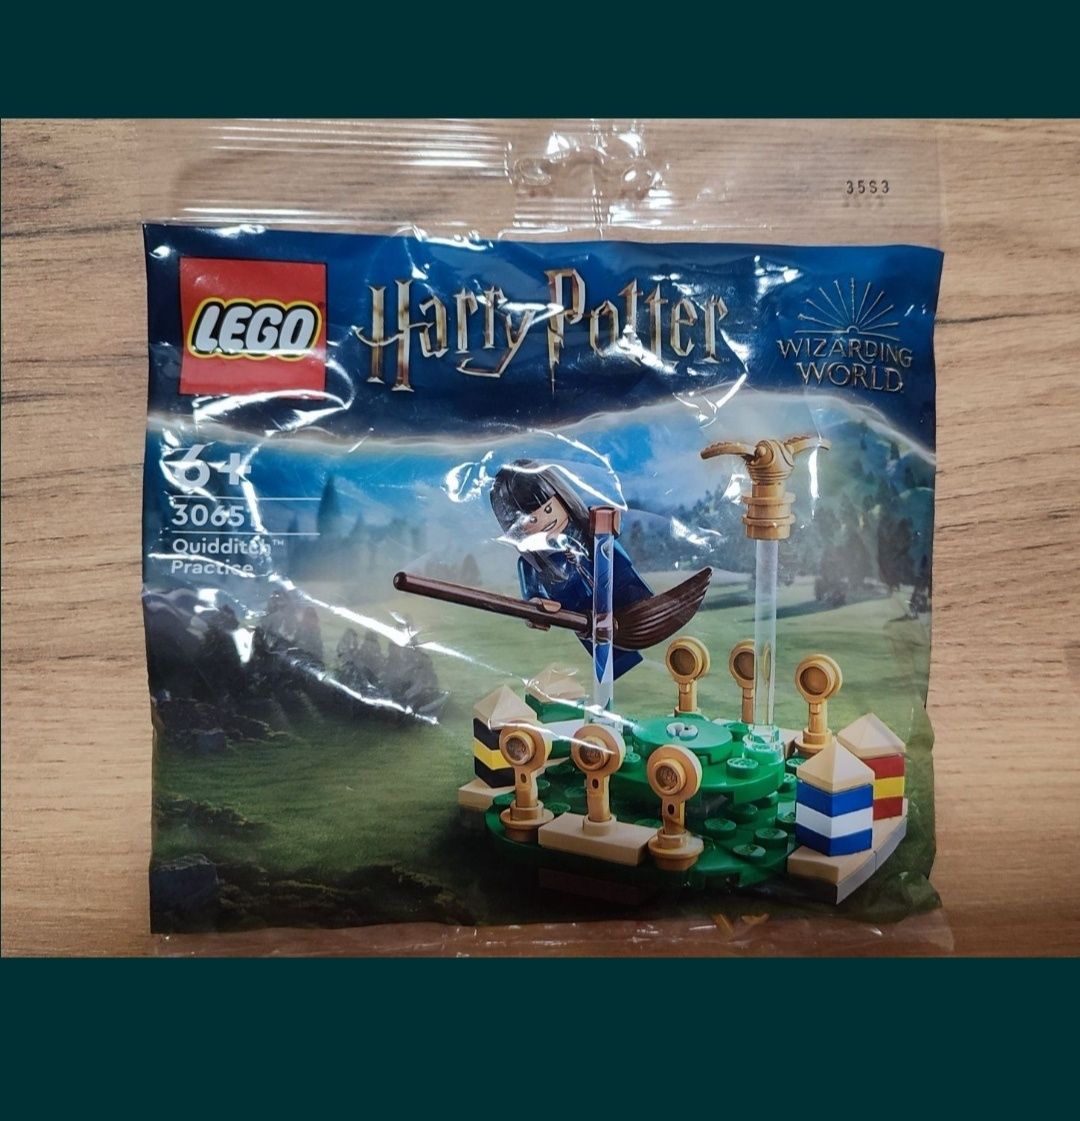 LEGO 30651 Harry Potter Trening quidditcha 
Quidditch Practice